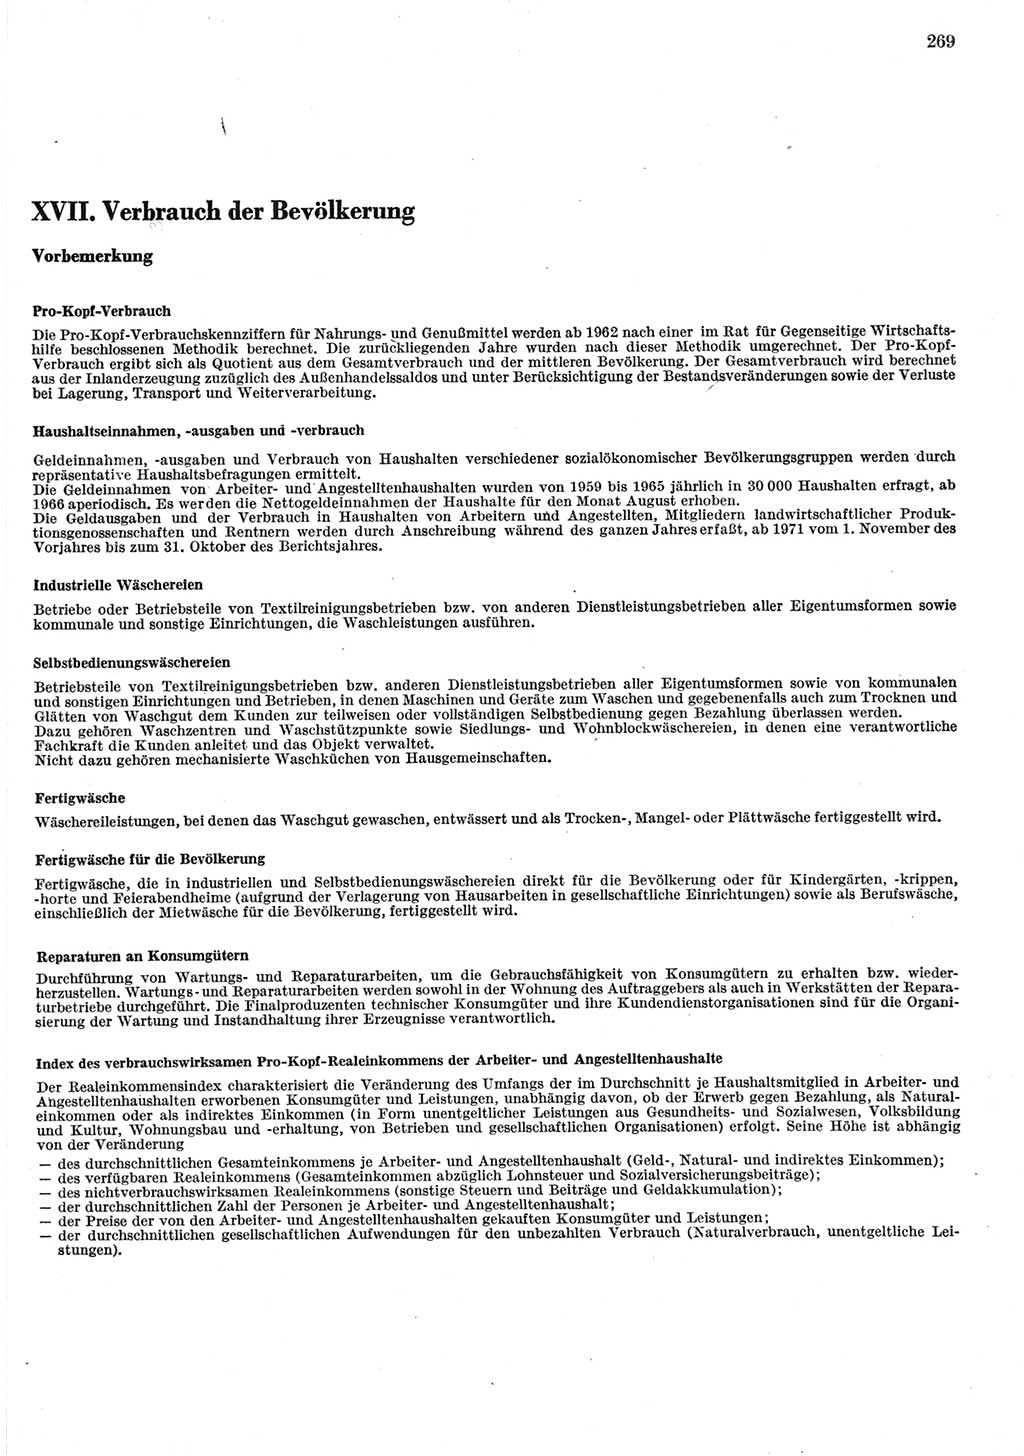 Statistisches Jahrbuch der Deutschen Demokratischen Republik (DDR) 1981, Seite 269 (Stat. Jb. DDR 1981, S. 269)